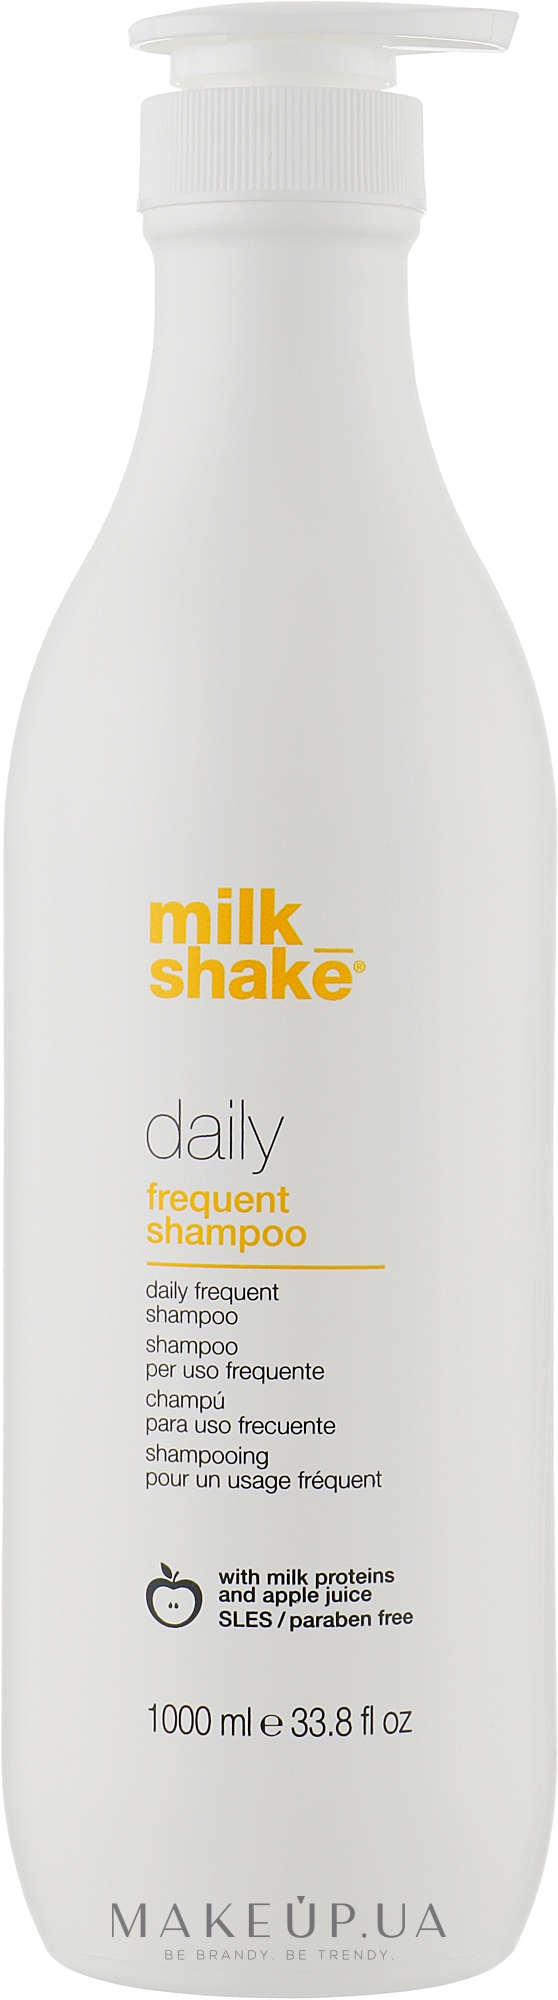 Шампунь для щоденного застосування - Milk_Shake Daily Frequent Shampoo — фото 1000ml